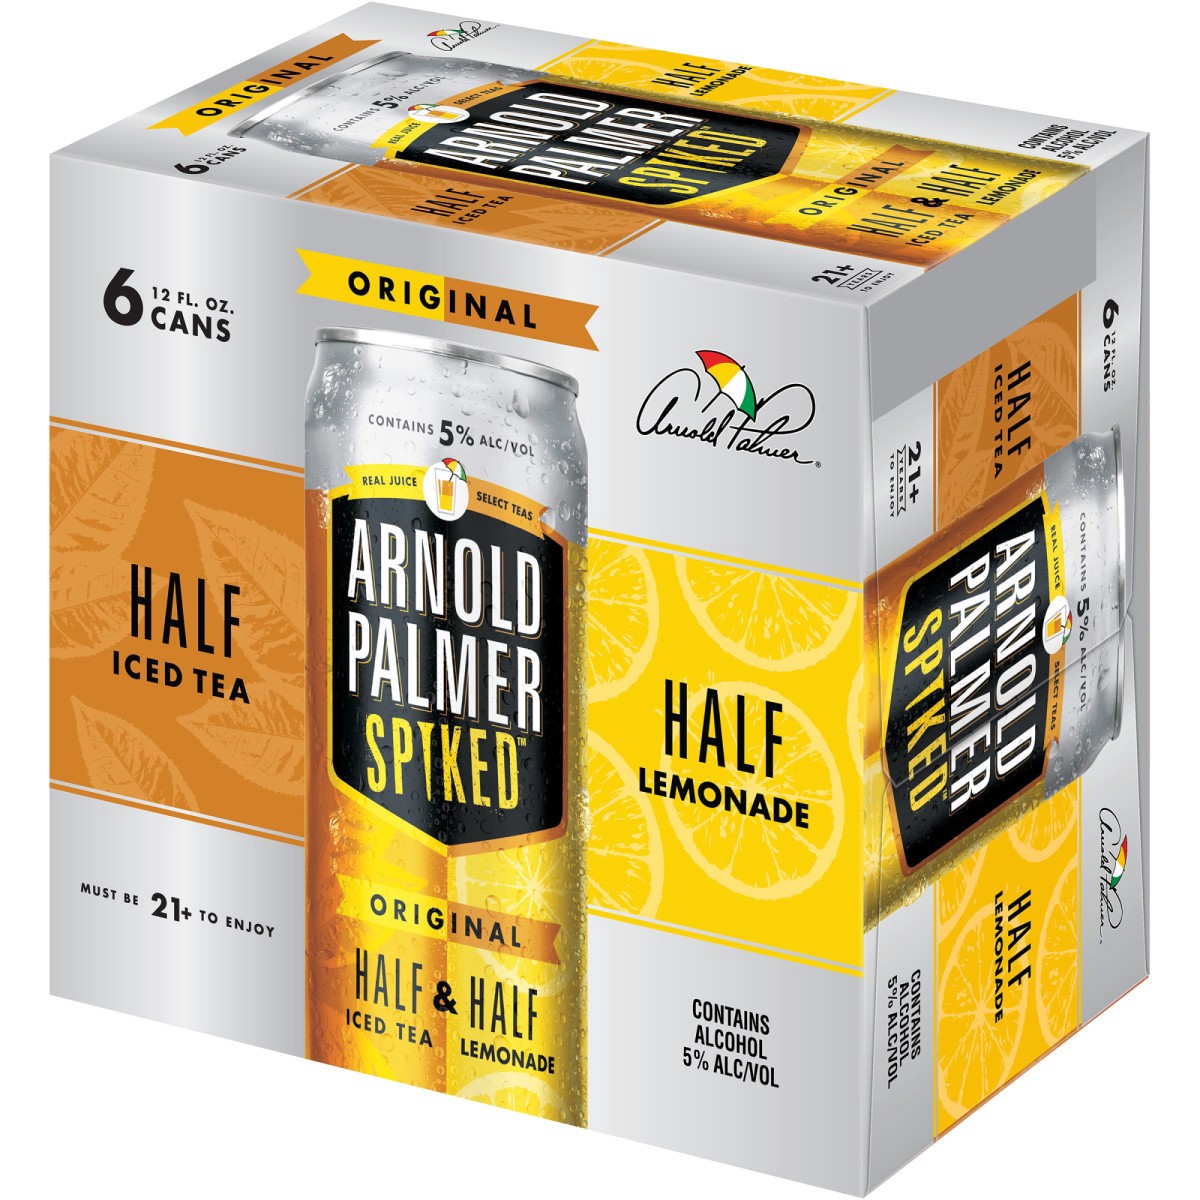 slide 10 of 29, Arnold Palmer Spiked Half & Half Original Arnold Palmer Spiked Original Half & Half Iced Tea Lemonade, 6 Pack, 12 fl oz Cans, 5% ABV, 72 fl oz